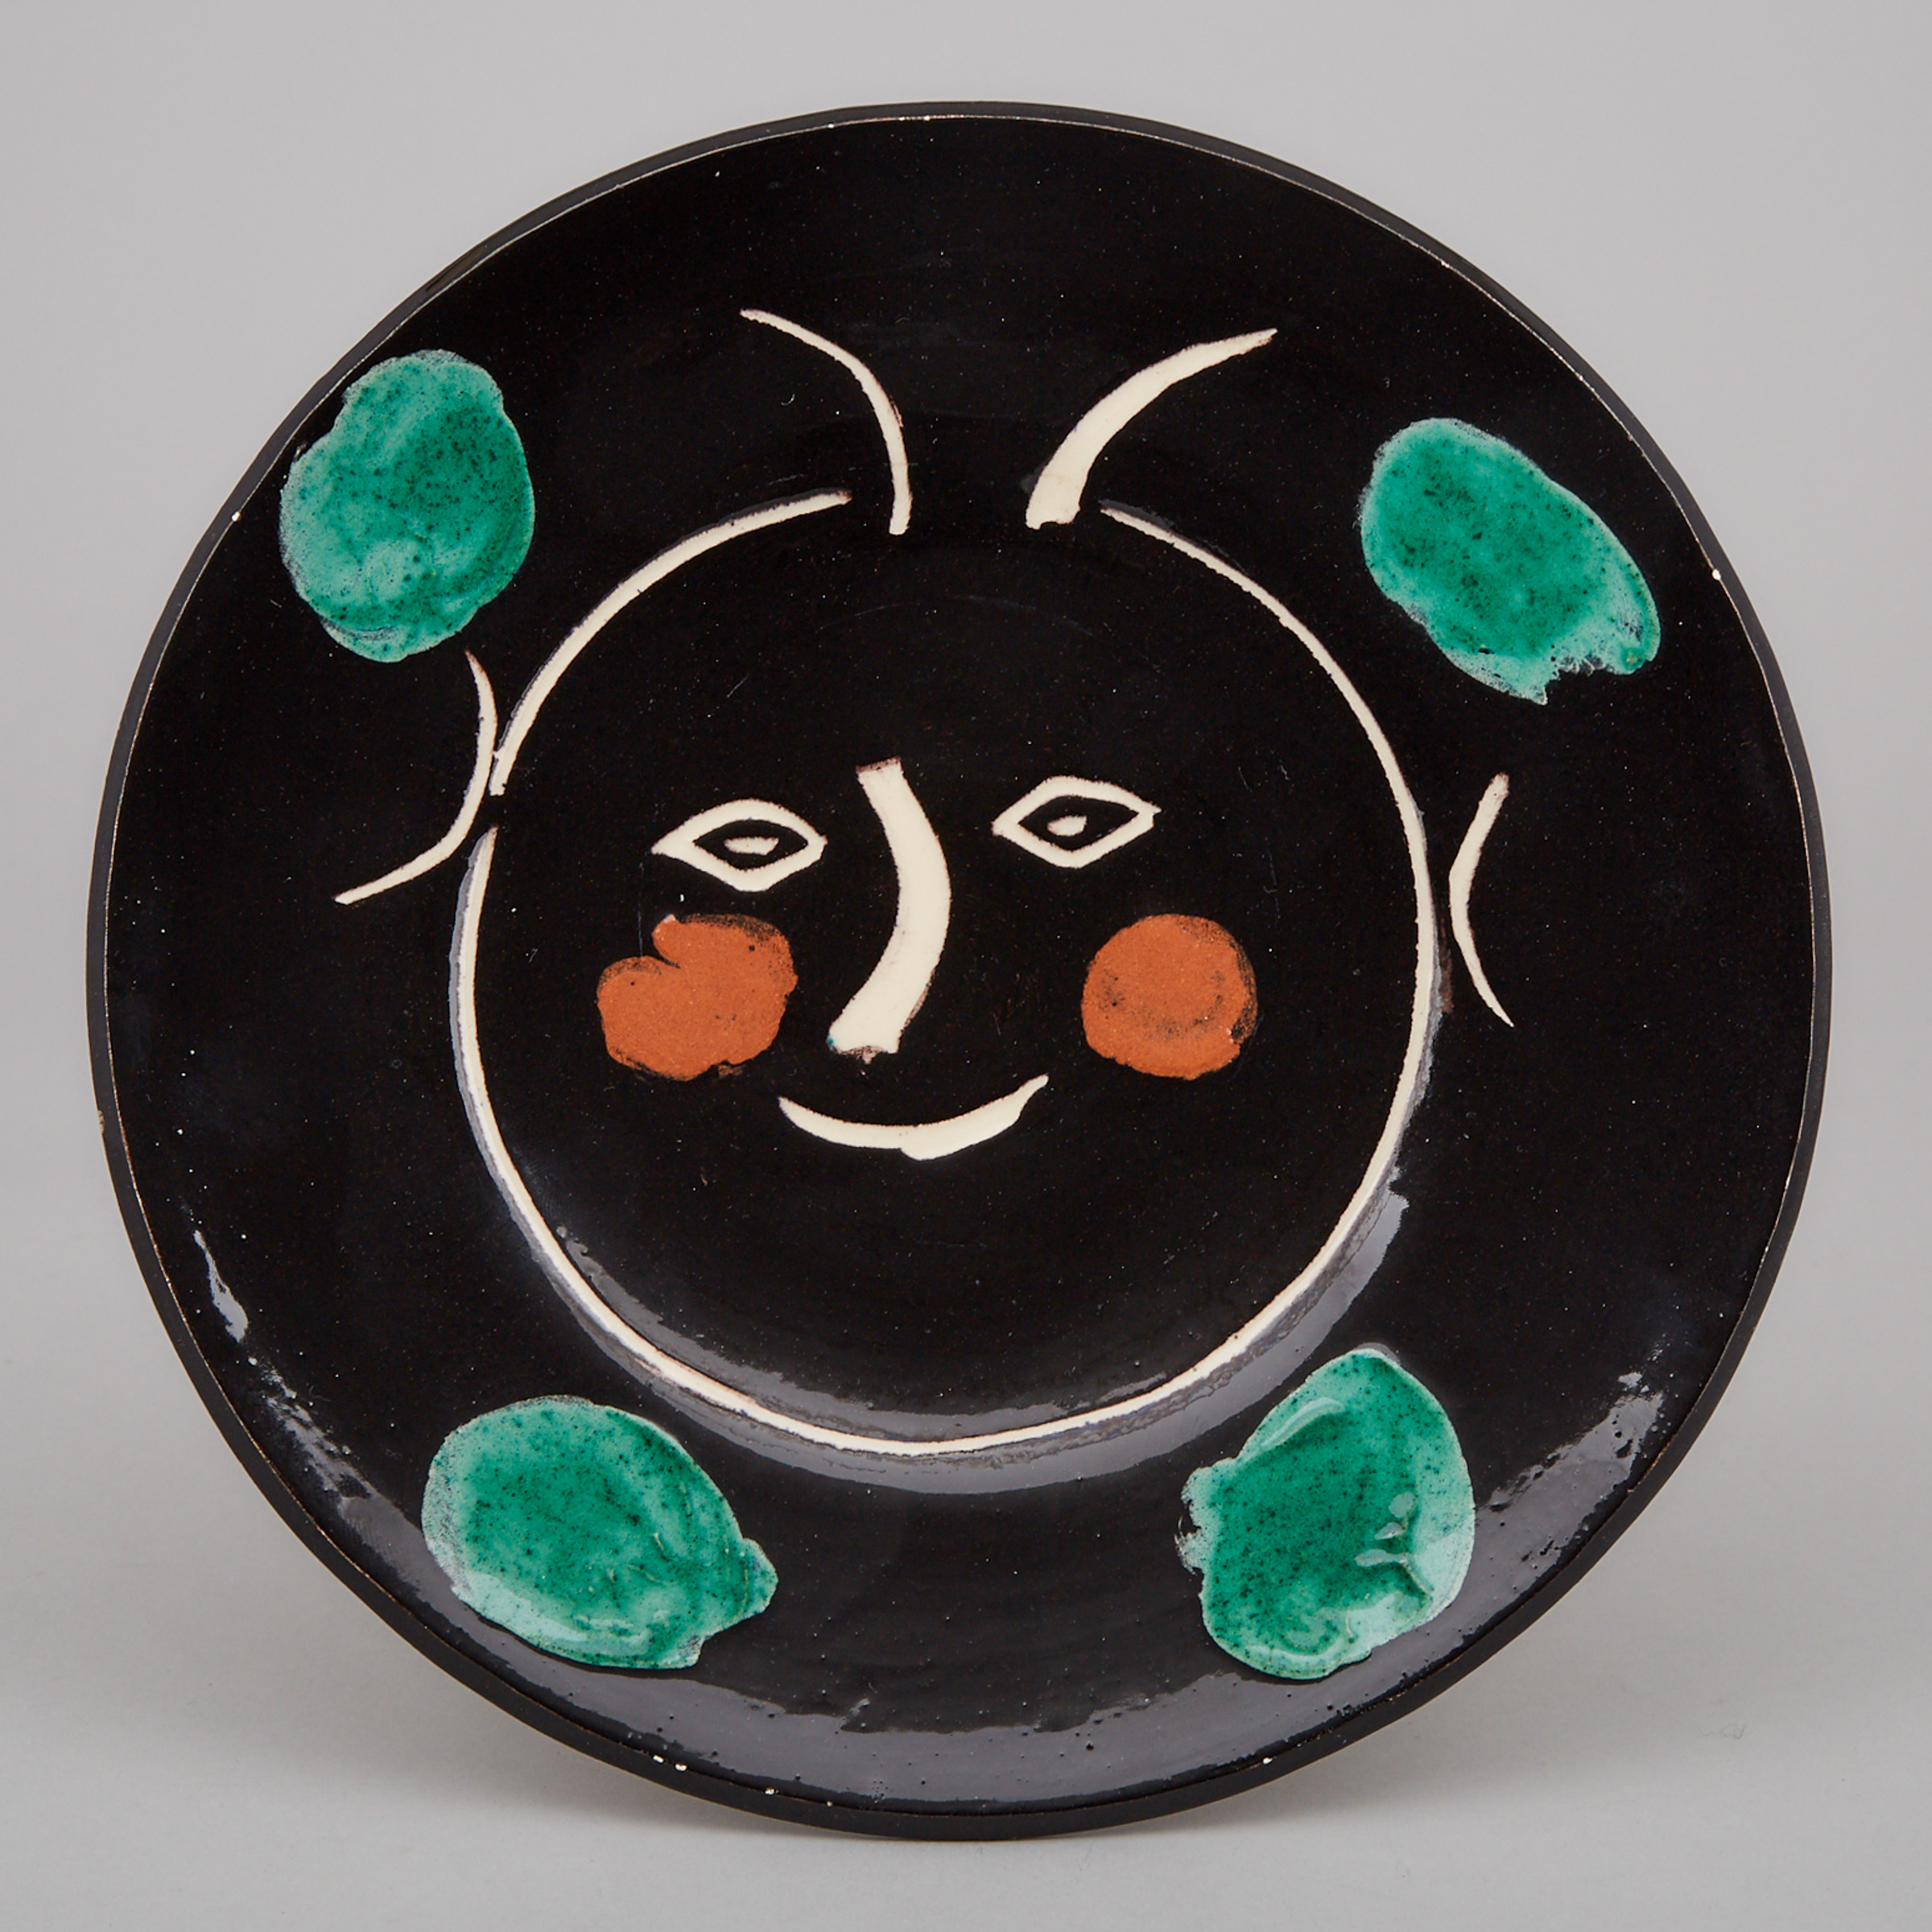 Pablo Picasso (1881-1973), Ceramic Plate, c.1948